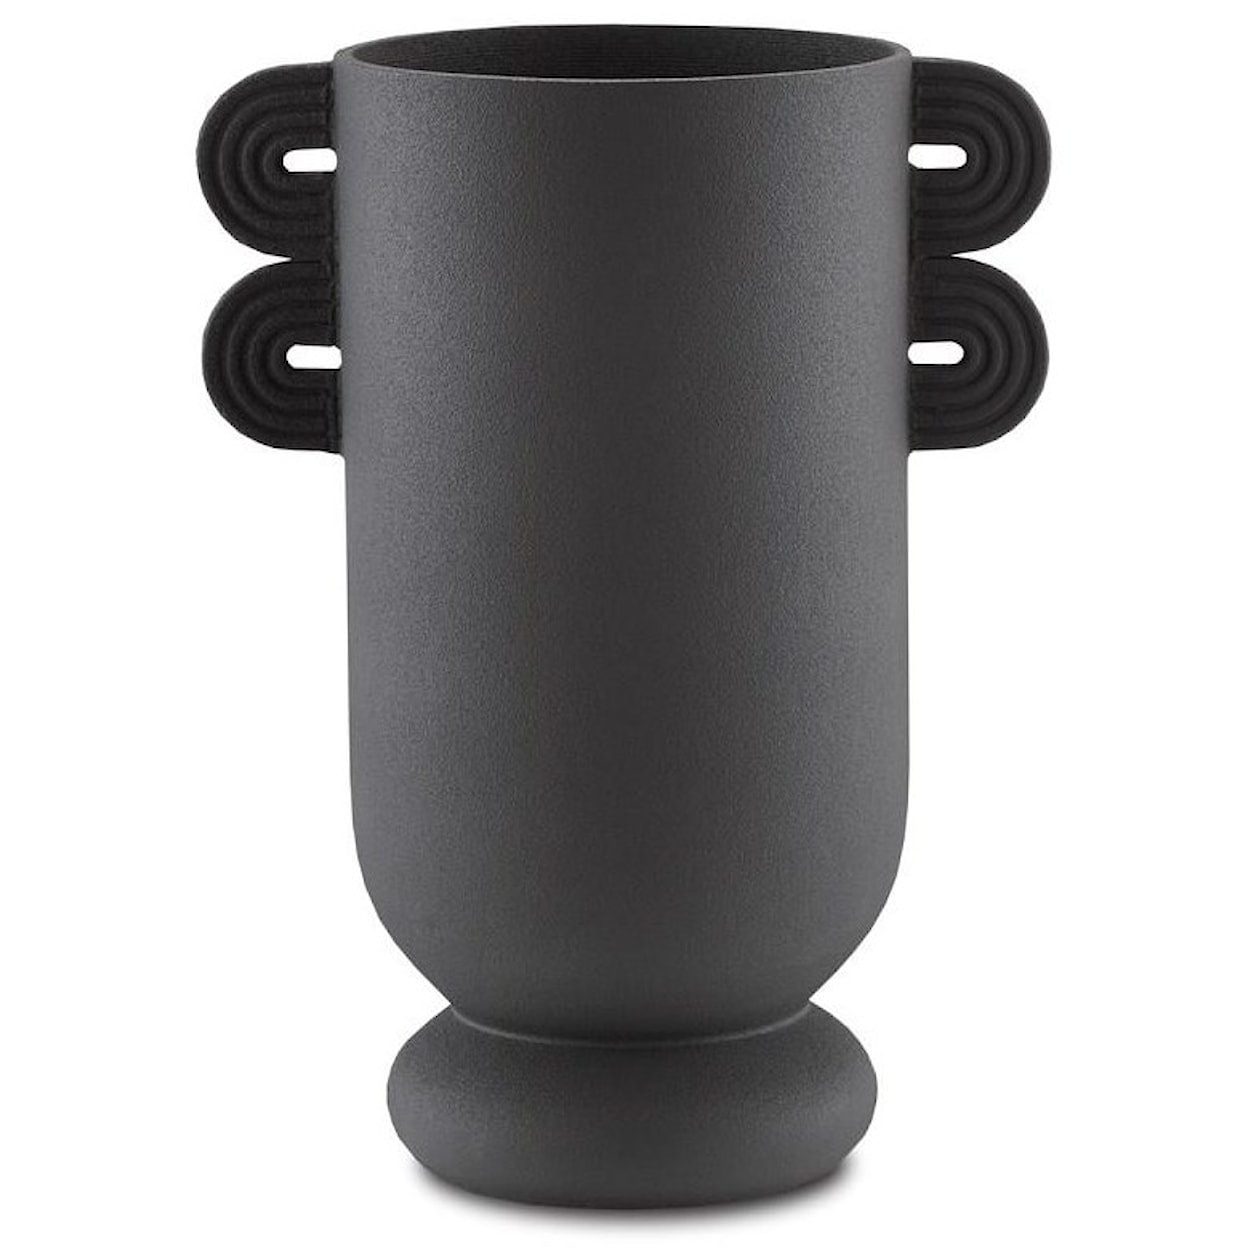 Currey & Co Tabletop Accessories Black Vase